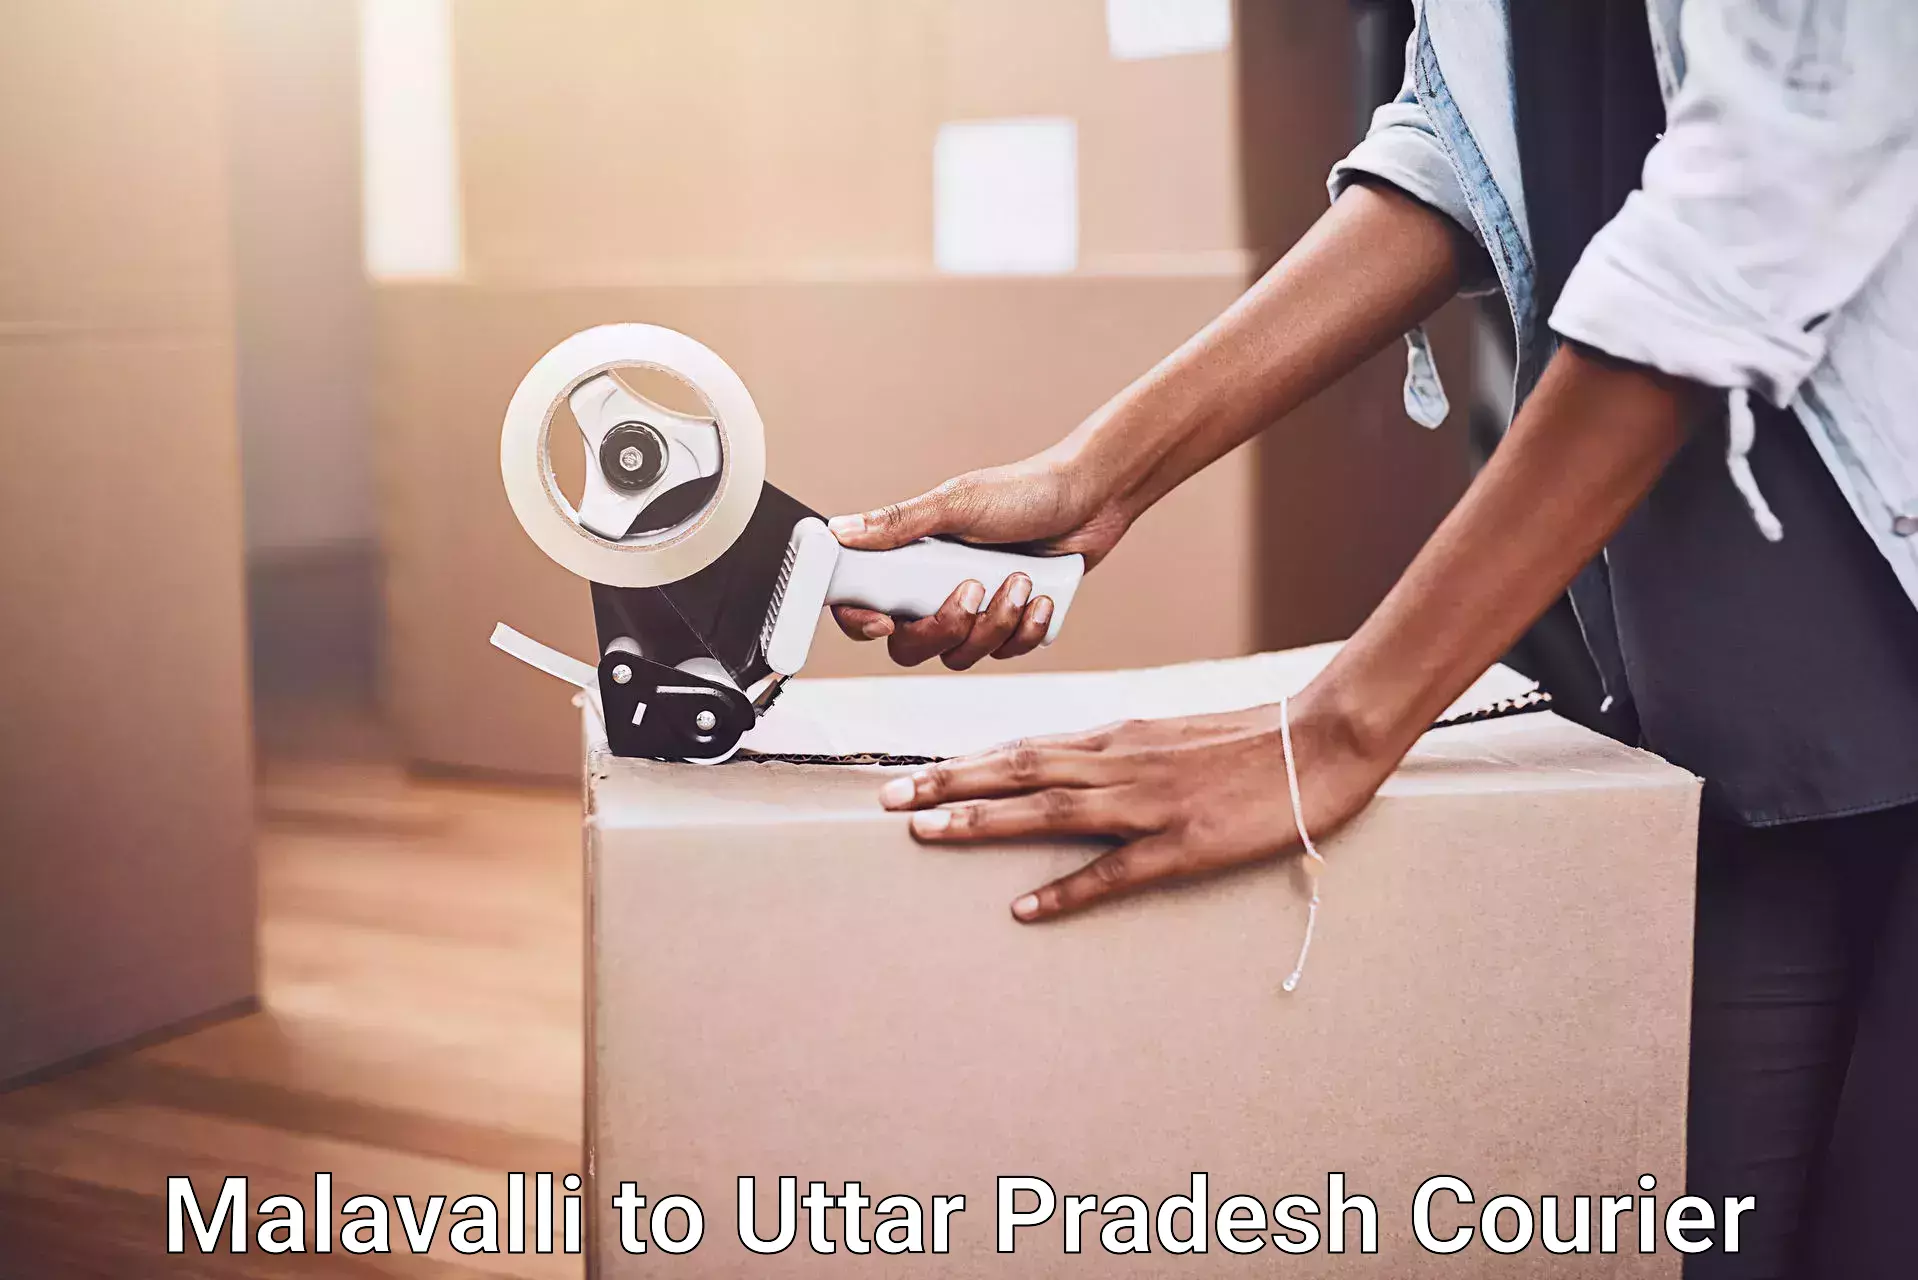 Furniture moving experts Malavalli to Sant Ravidas Nagar